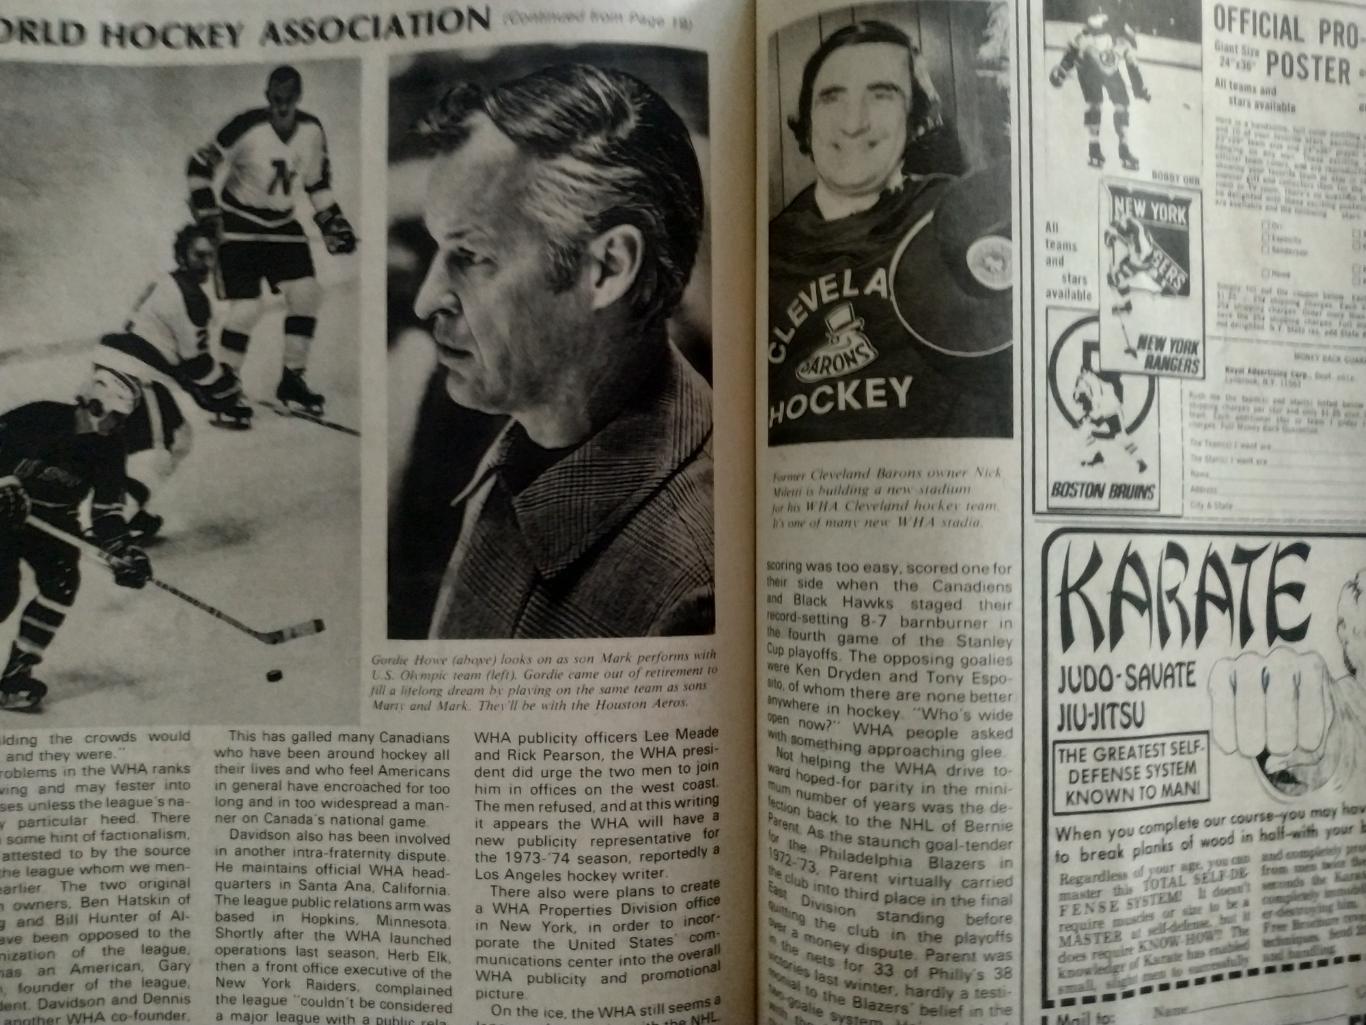 ЖУРНАЛ СПРАВОЧНИК НХЛ СПОРТ БЕН СТРОНГ ХОКЕЕЙ NOV 1973 NHL BEN STRONG HOCKEY 7